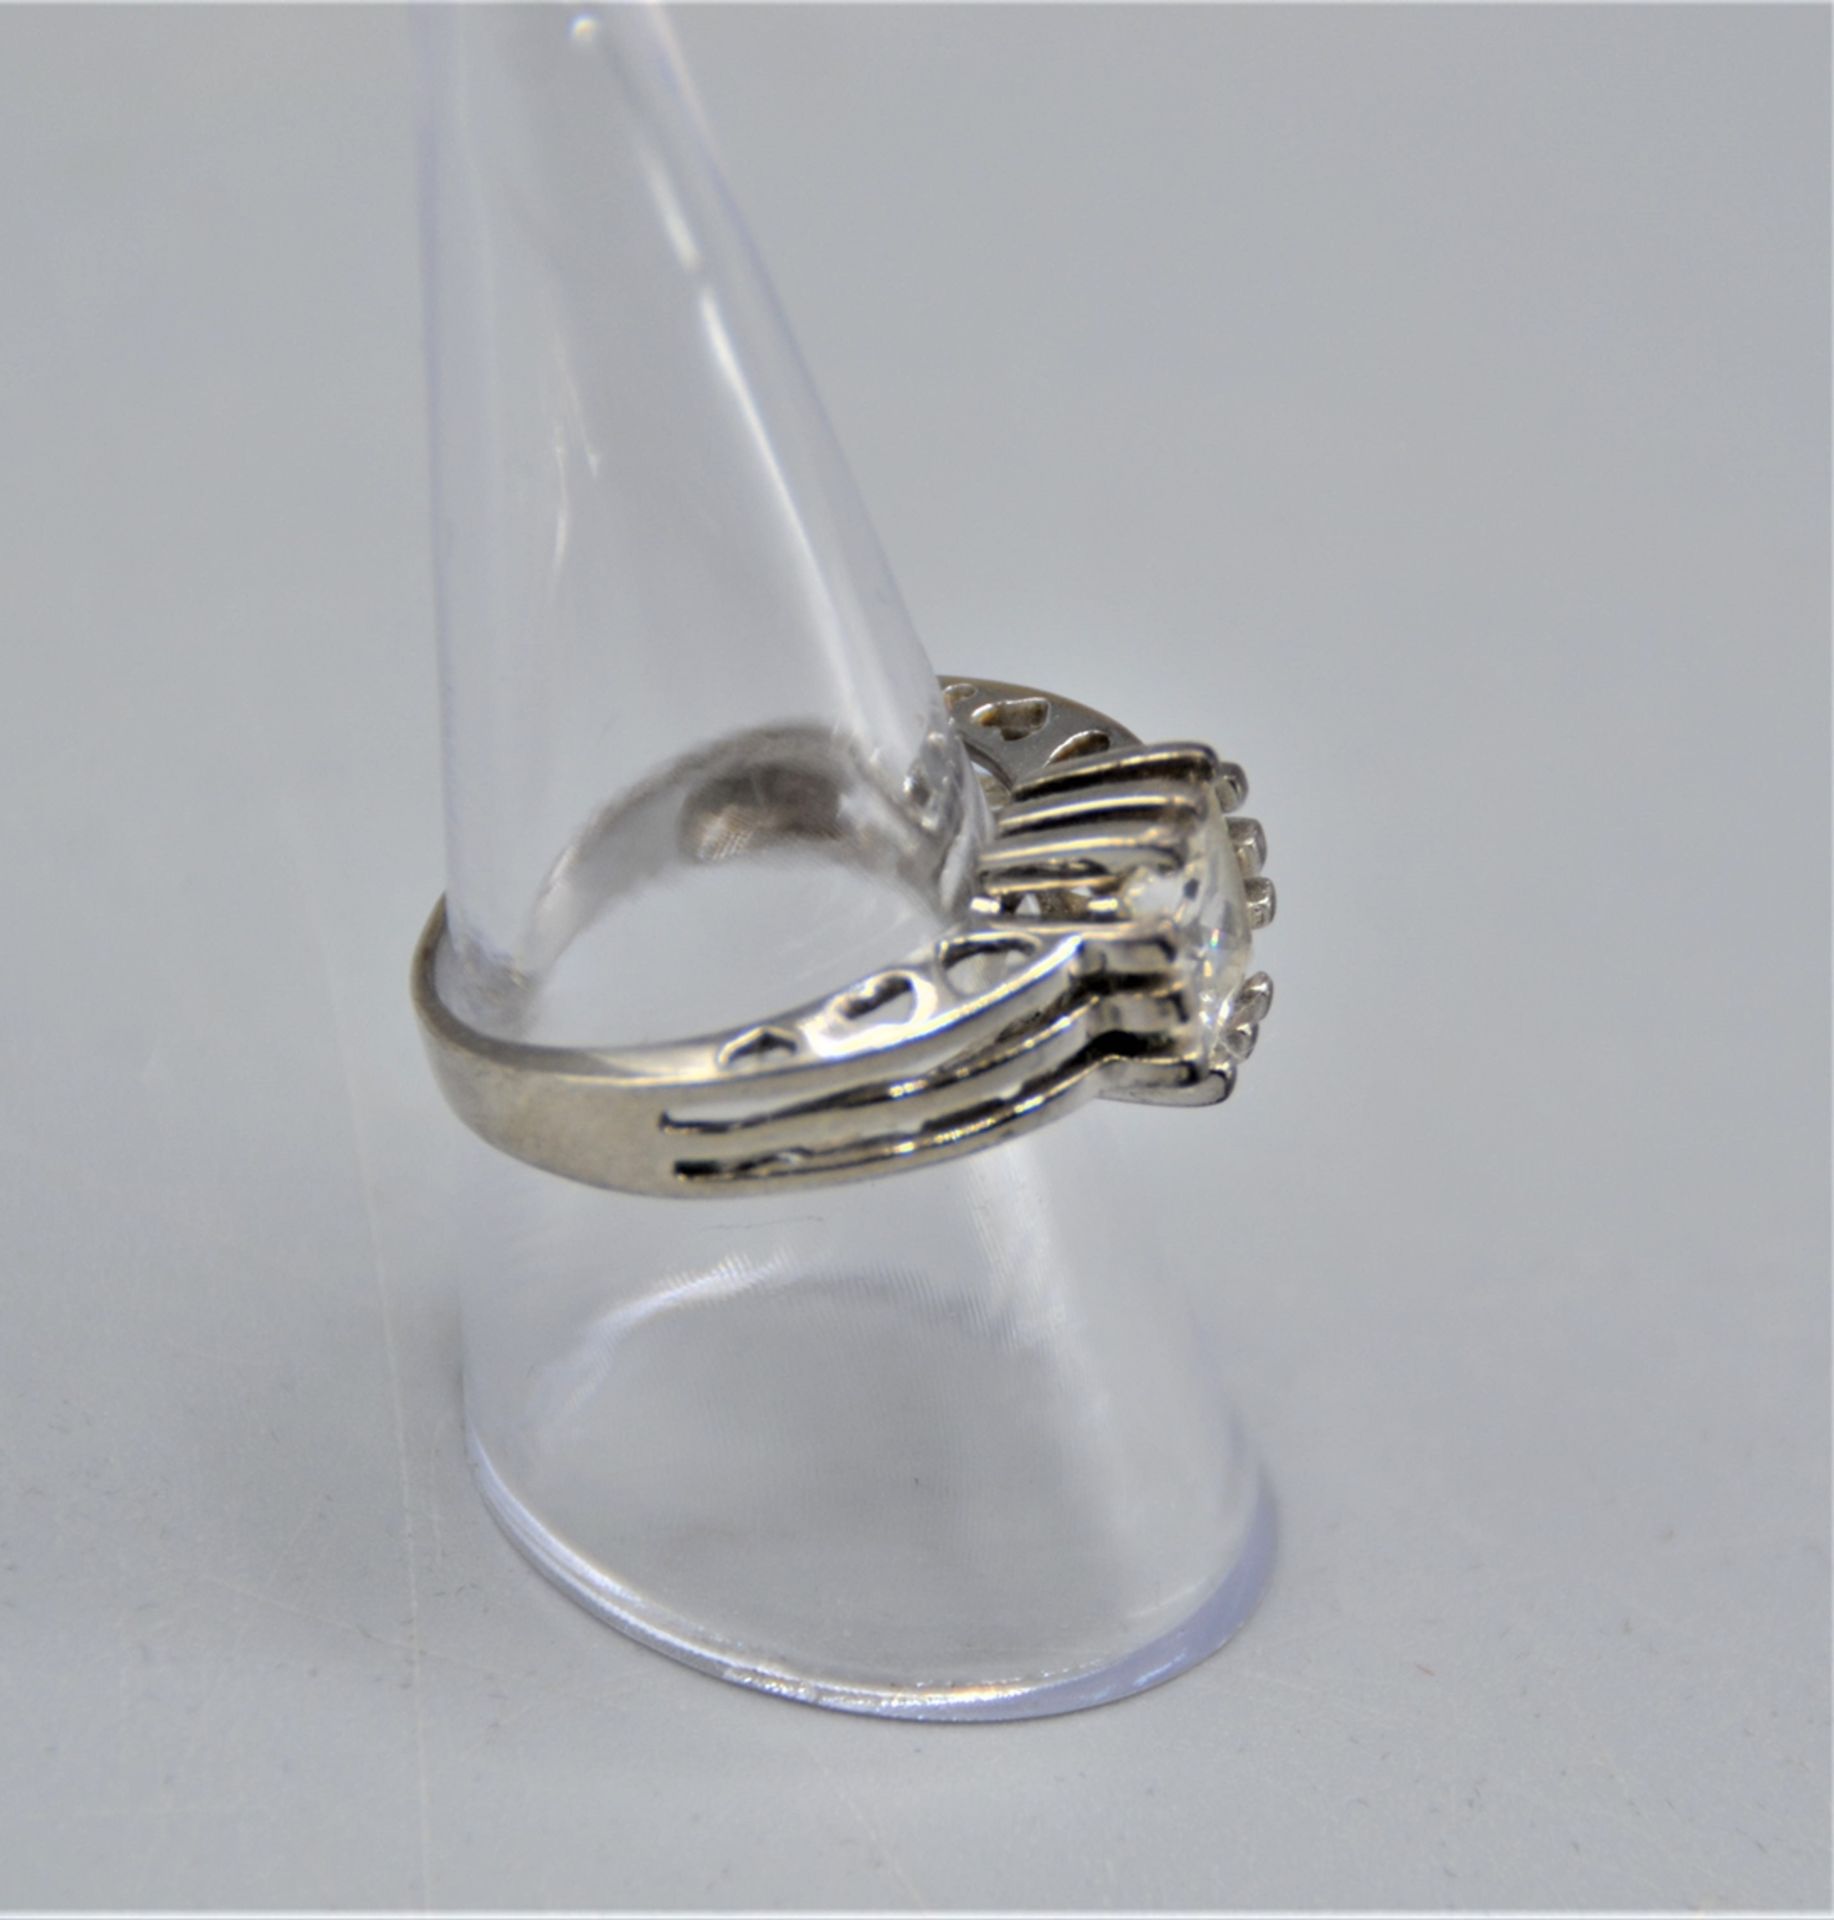 Silberring 925 mit weißen Glasstein, durchbrochene Schiene, Ø 18mm - Image 2 of 2